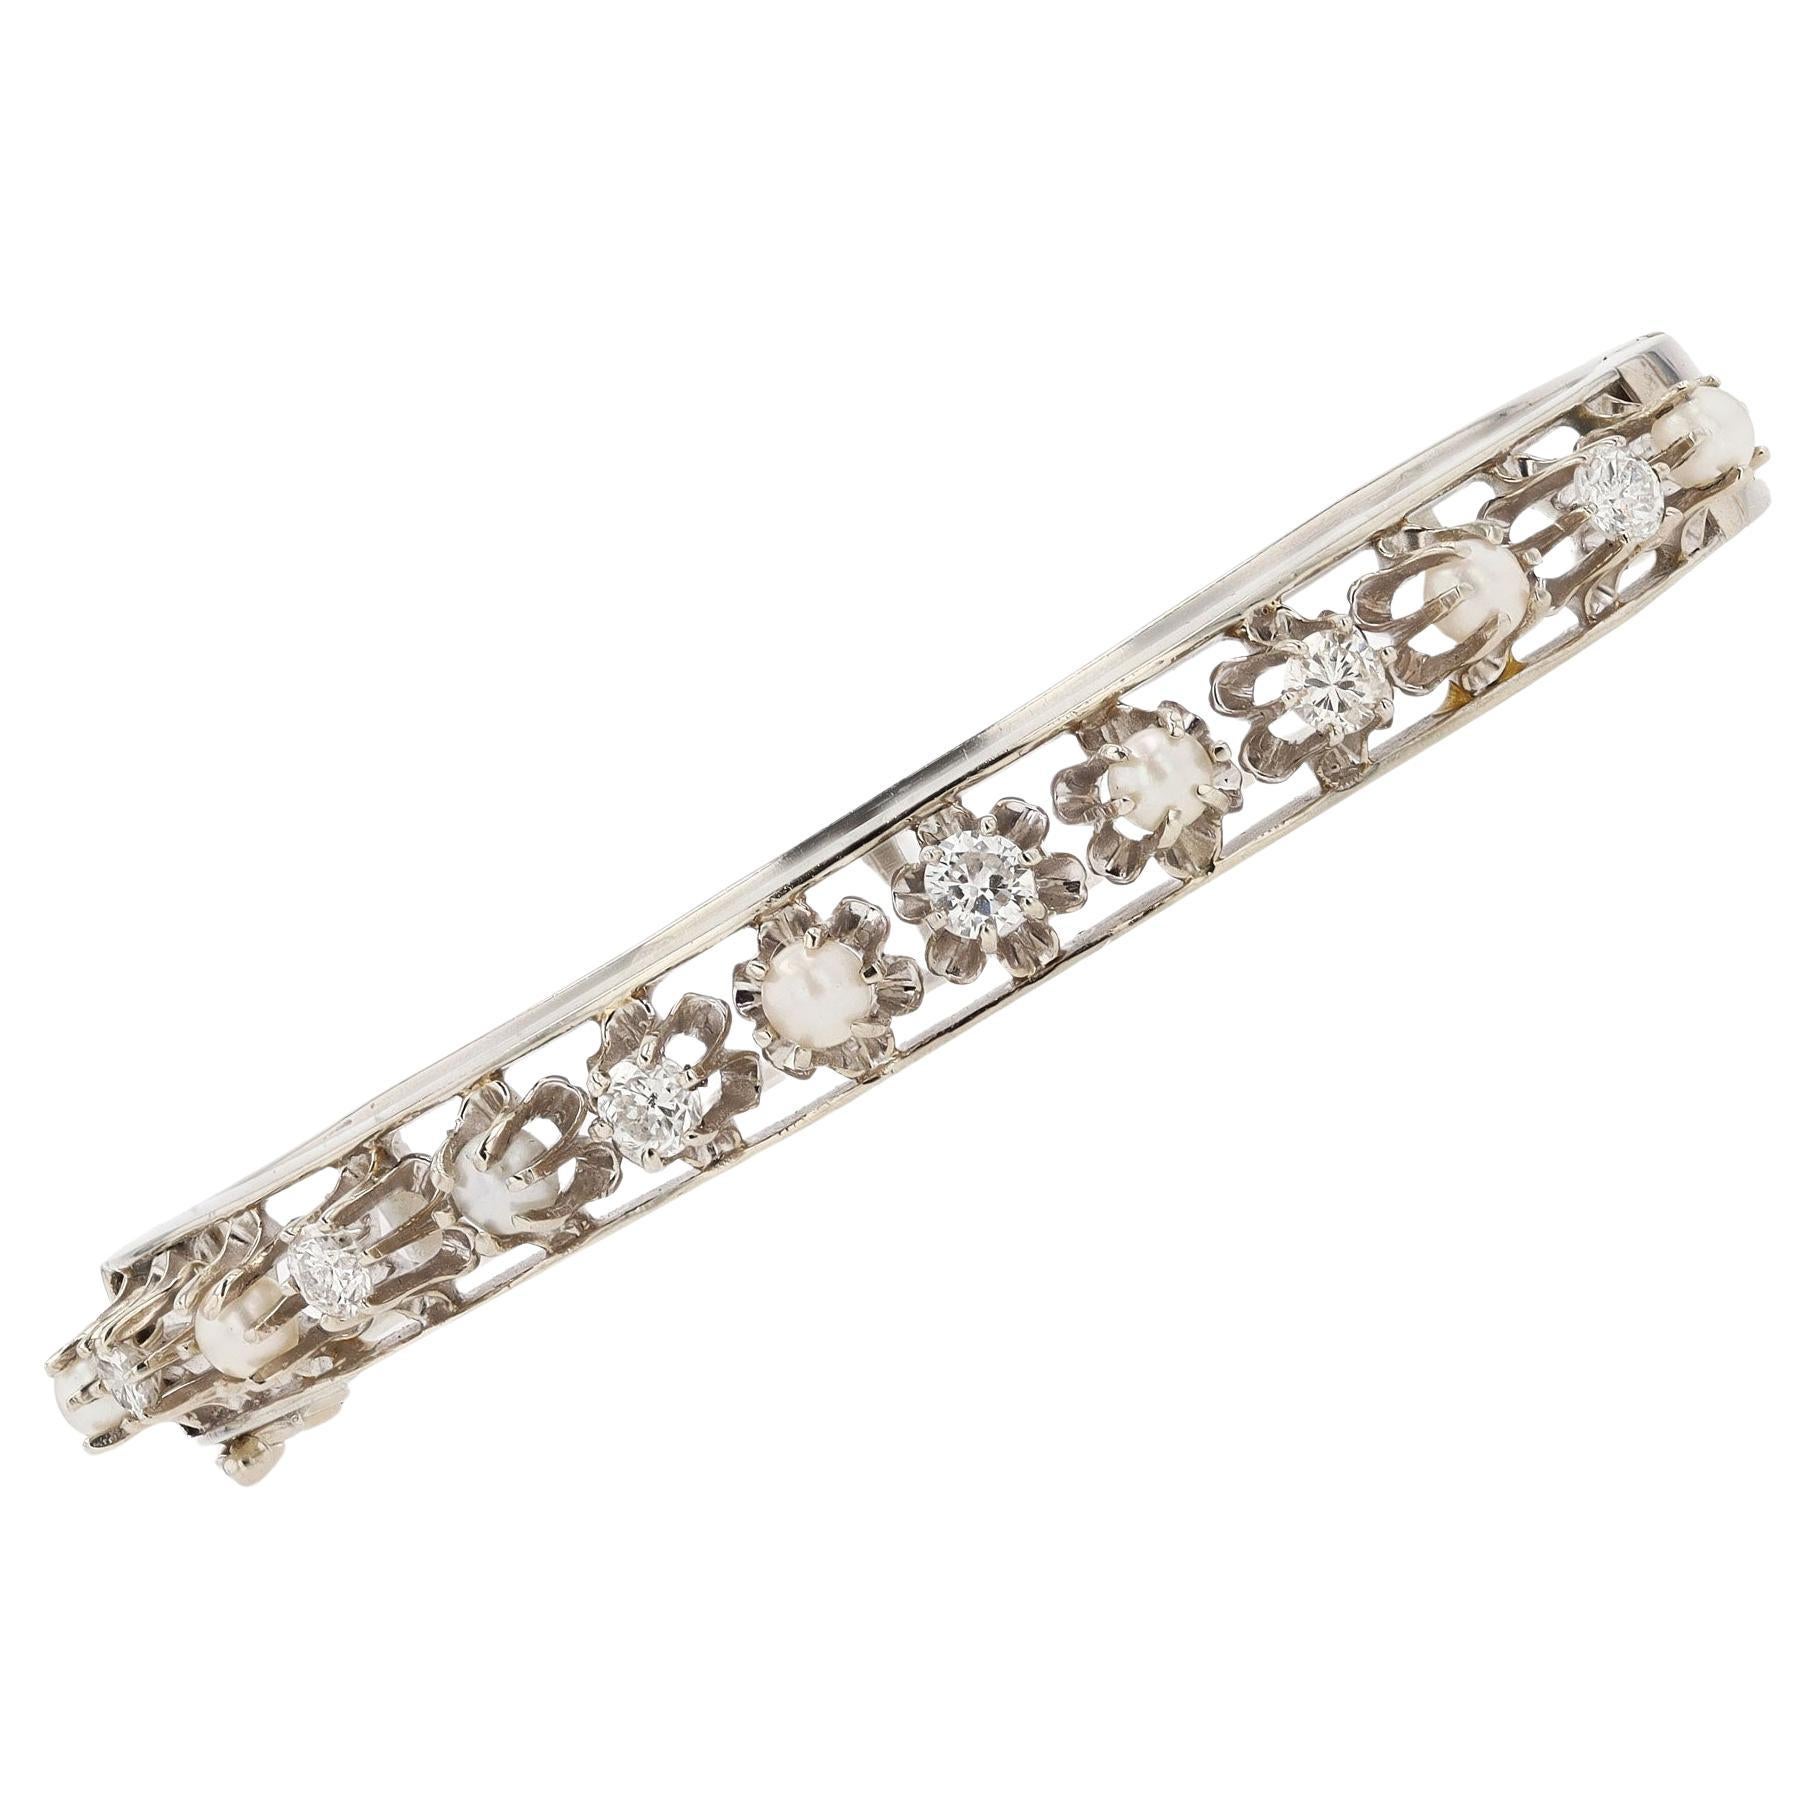  Antique Art Deco Diamond & Pearl Buttercup Bangle Bracelet